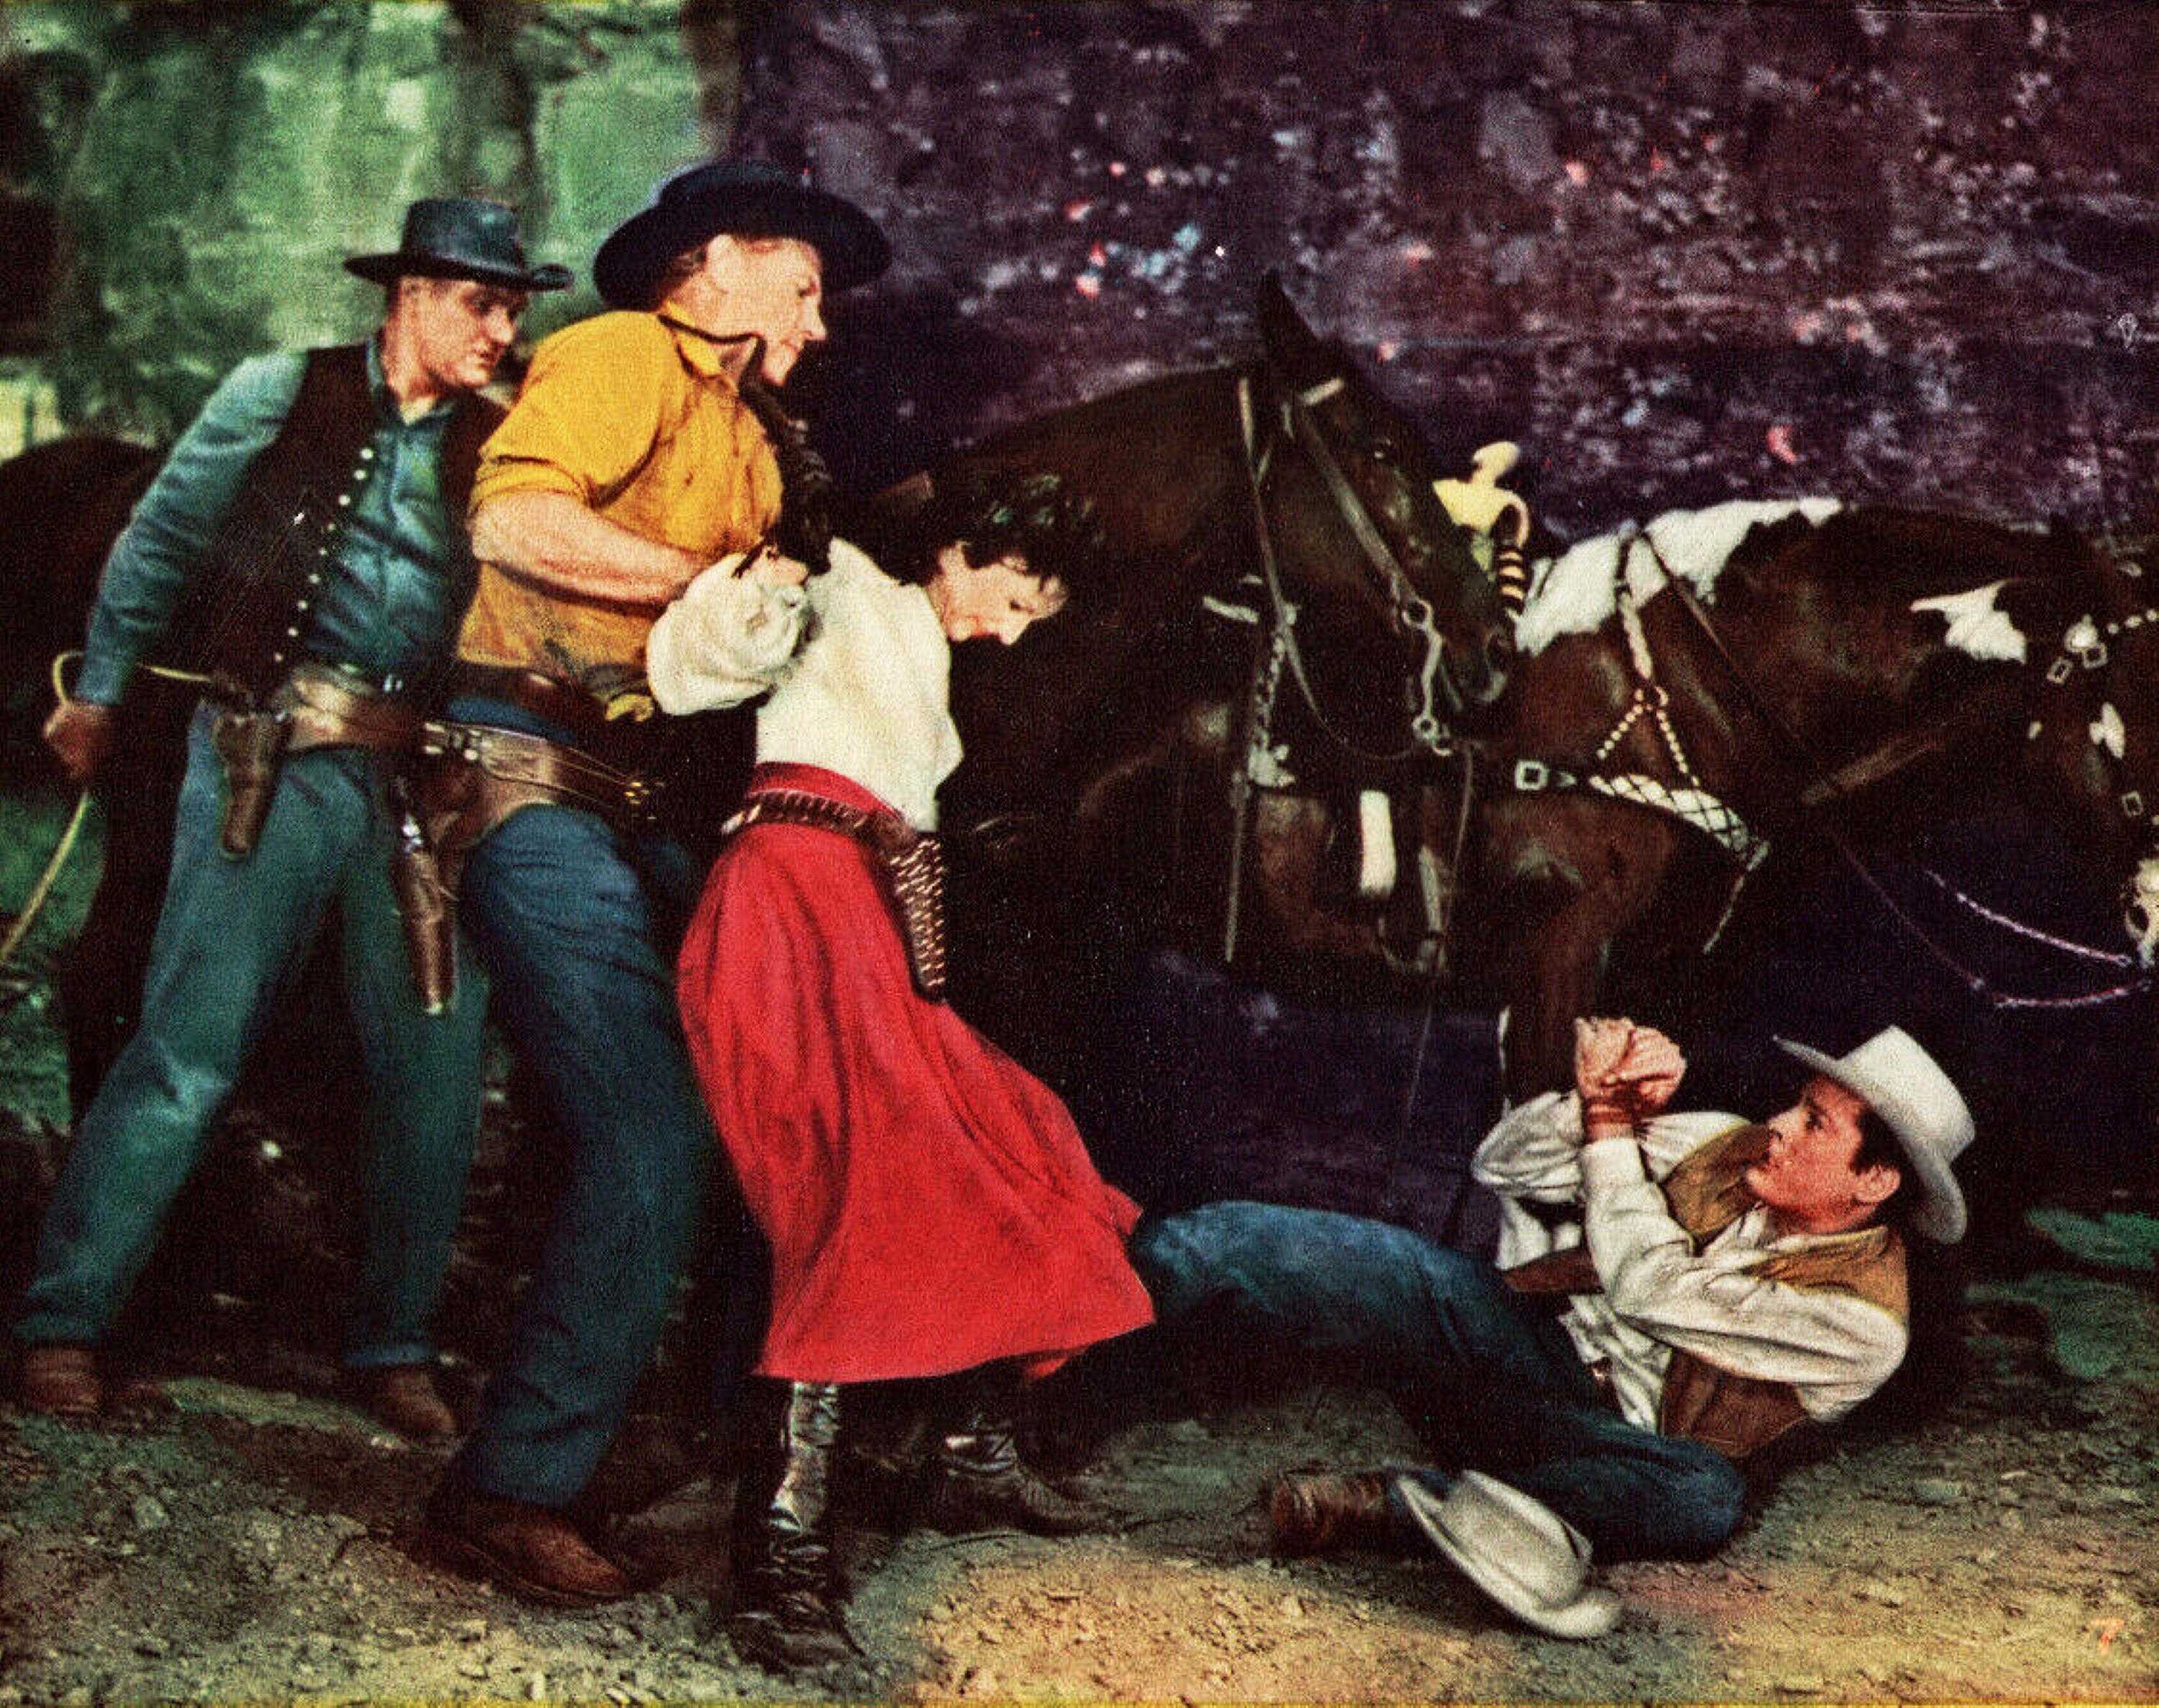 Stranger on Horseback (1955) Screenshot 2